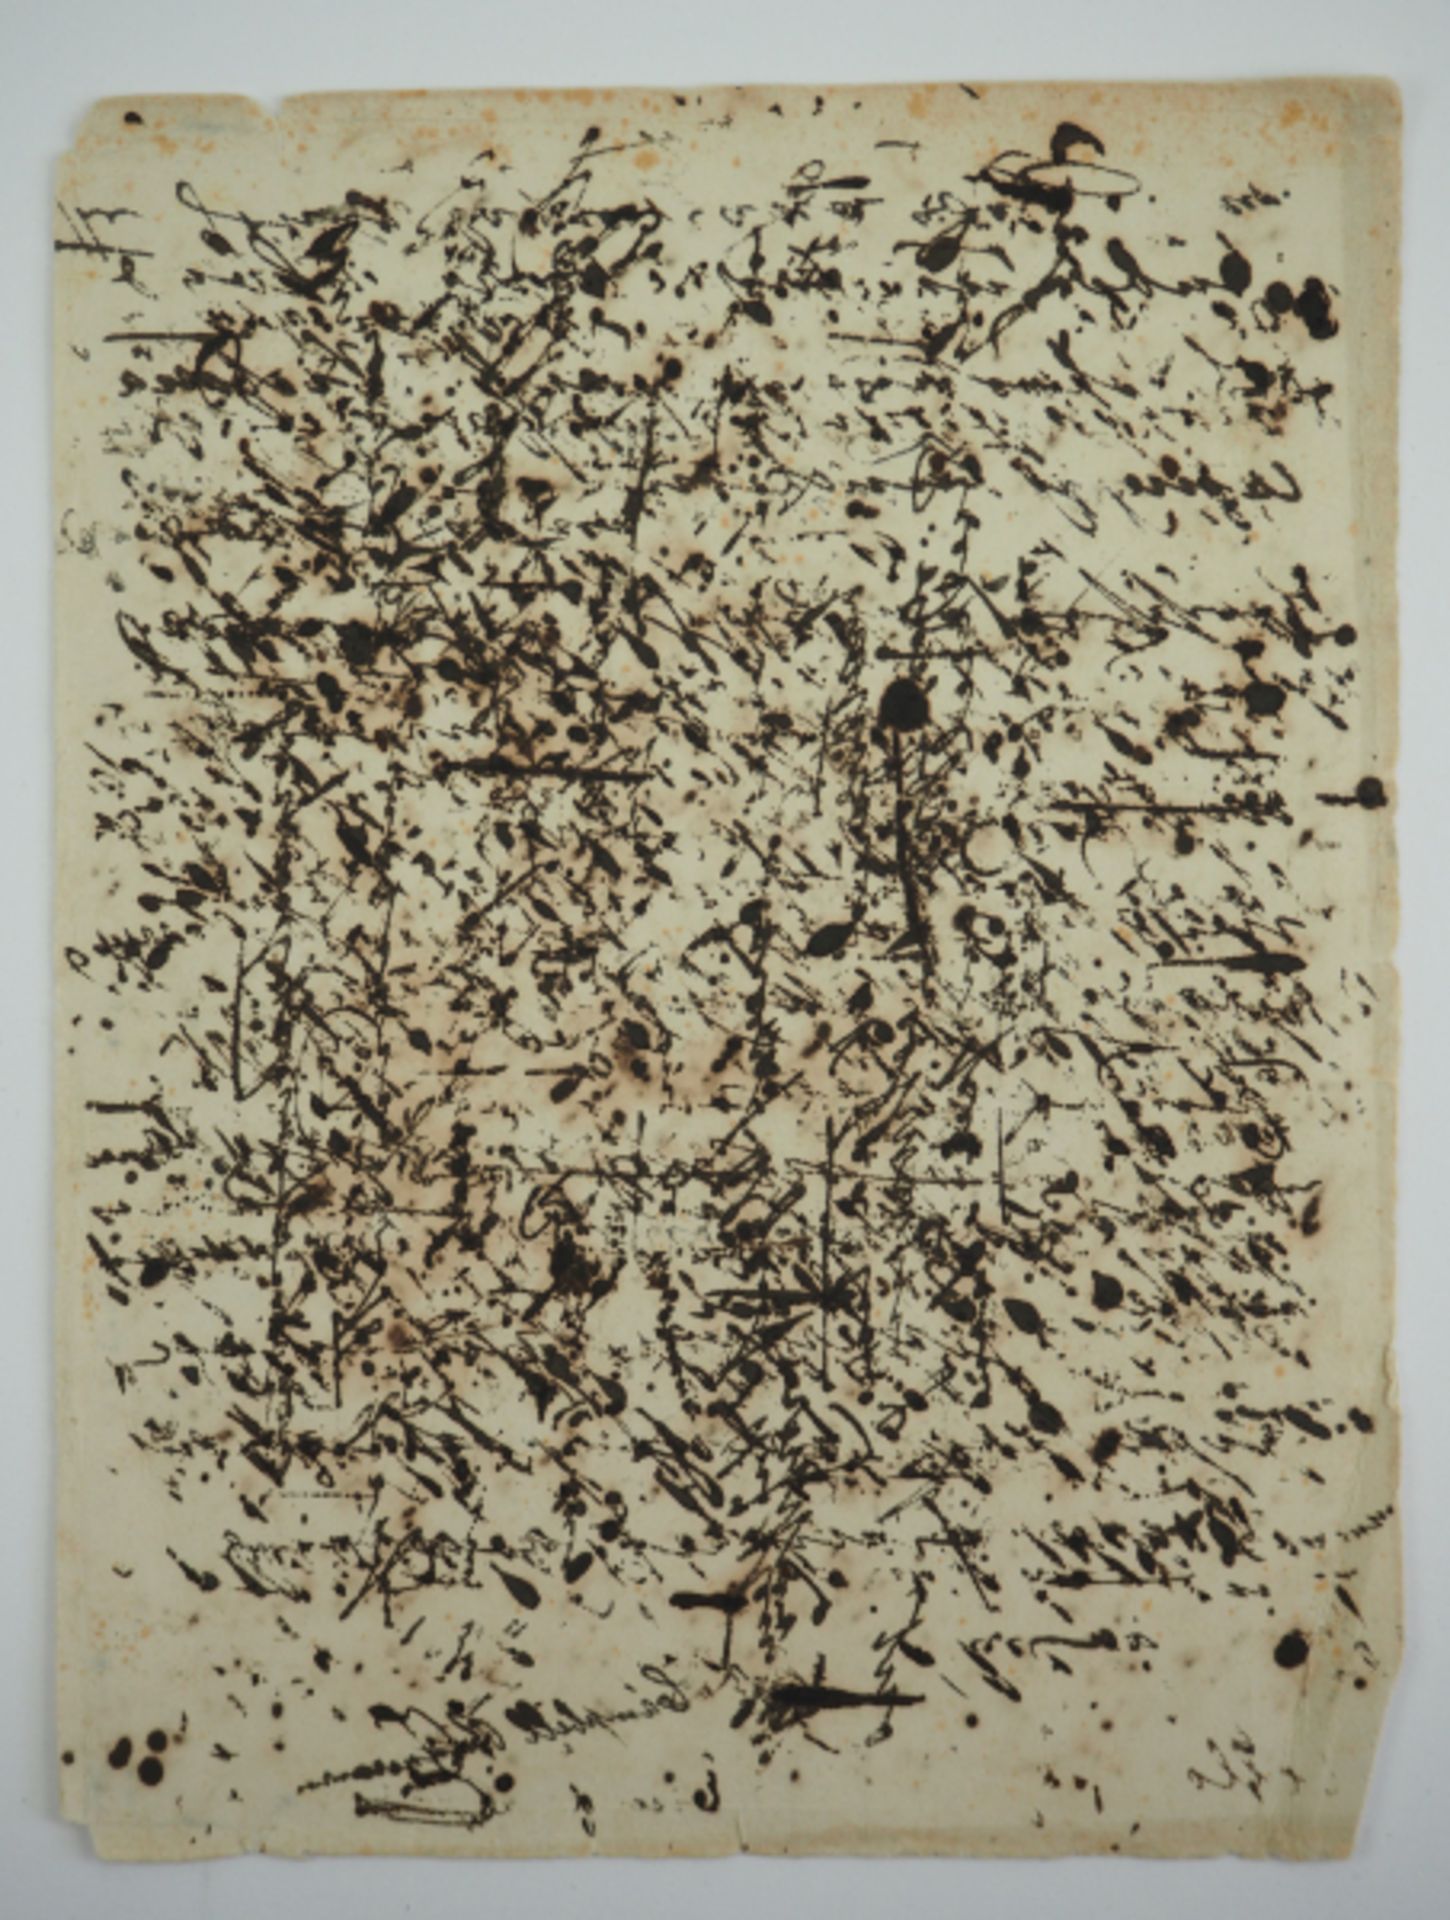 Marie Erbach: Tinten-Löschpapier.Stark gebraucht, Ihr Autograph darauf abgedruckt.Zustand: II-- - - - Image 2 of 2